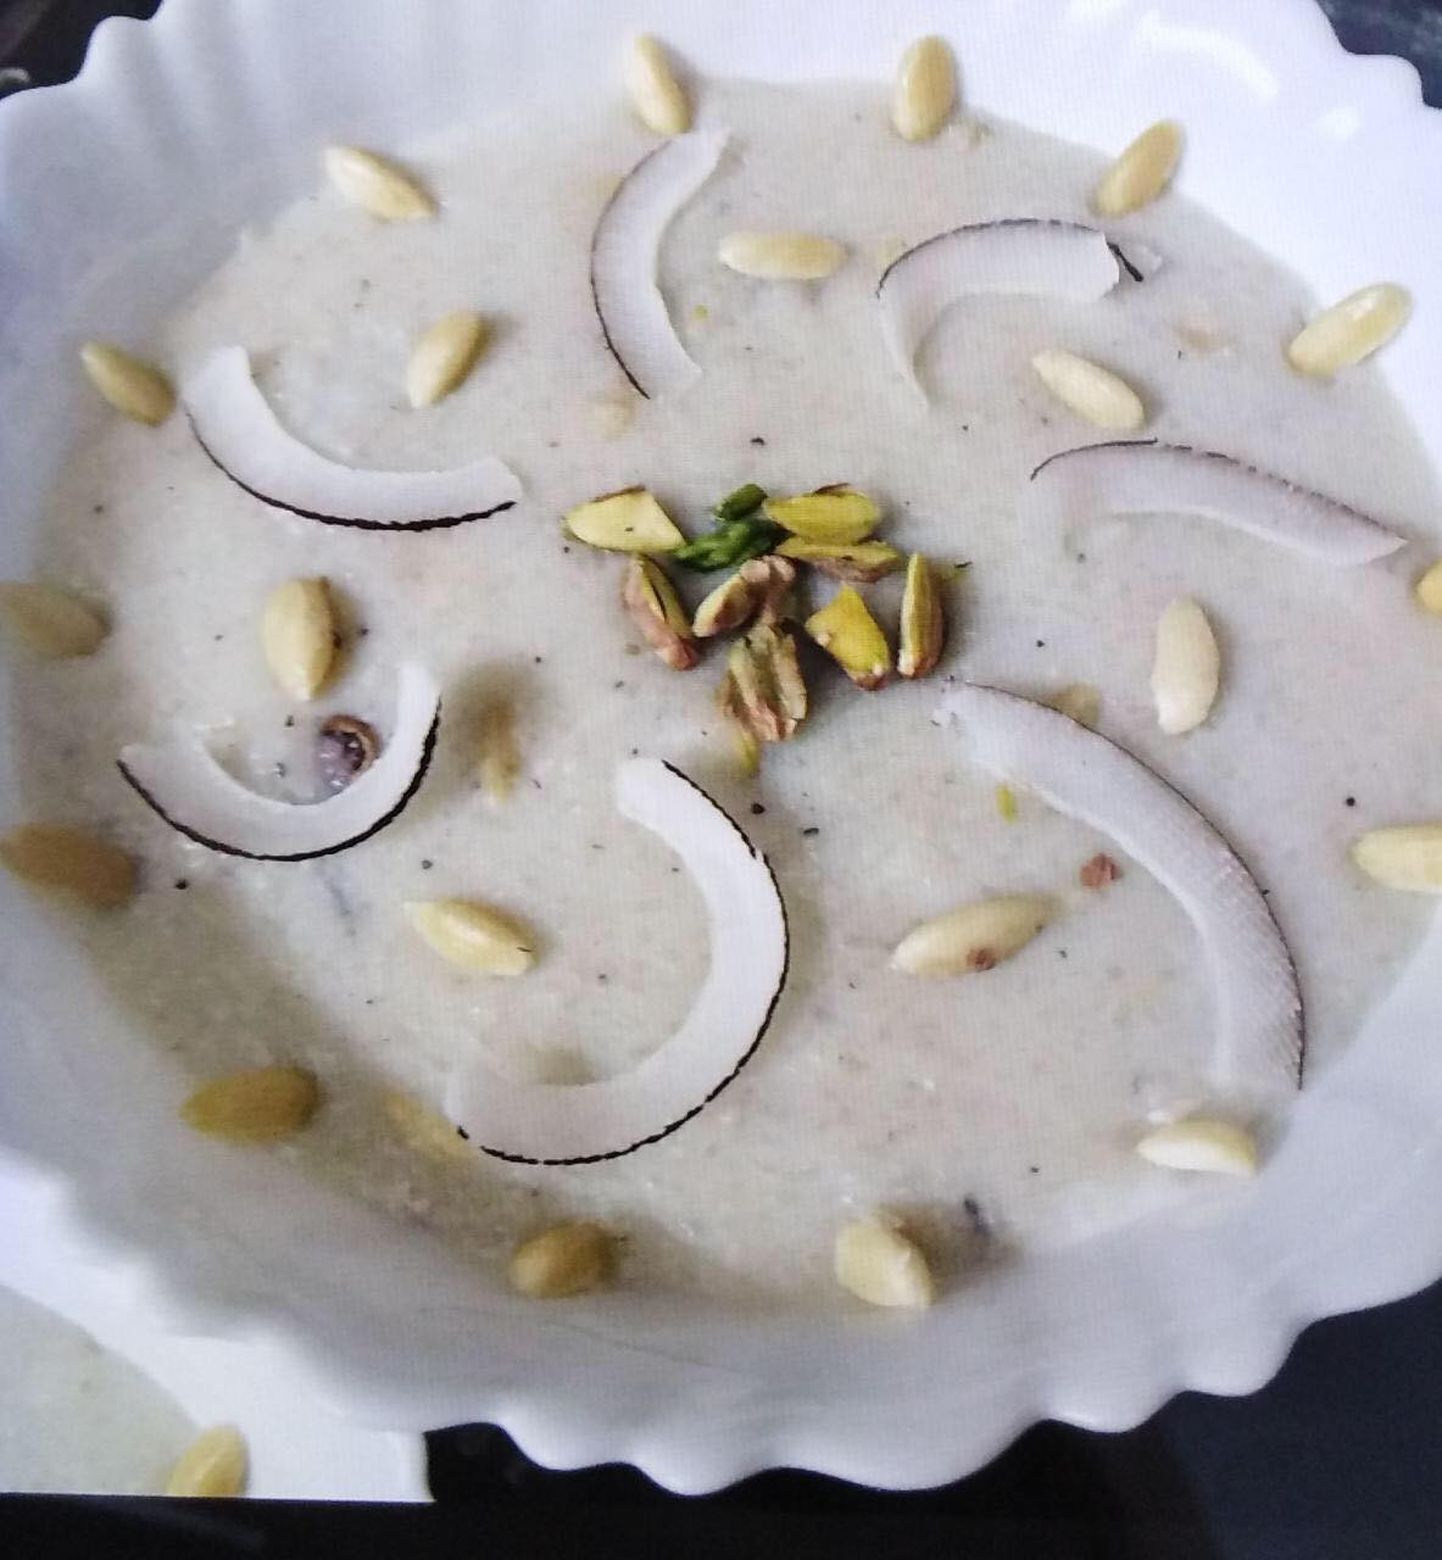 Kheer ehk riisipuding on Pakistanis armastatud magustoit, mida serveeritakse pulmade ja muude suuremate pidustuste ajal, ent valmistatakse ka koduse magustoiduna.